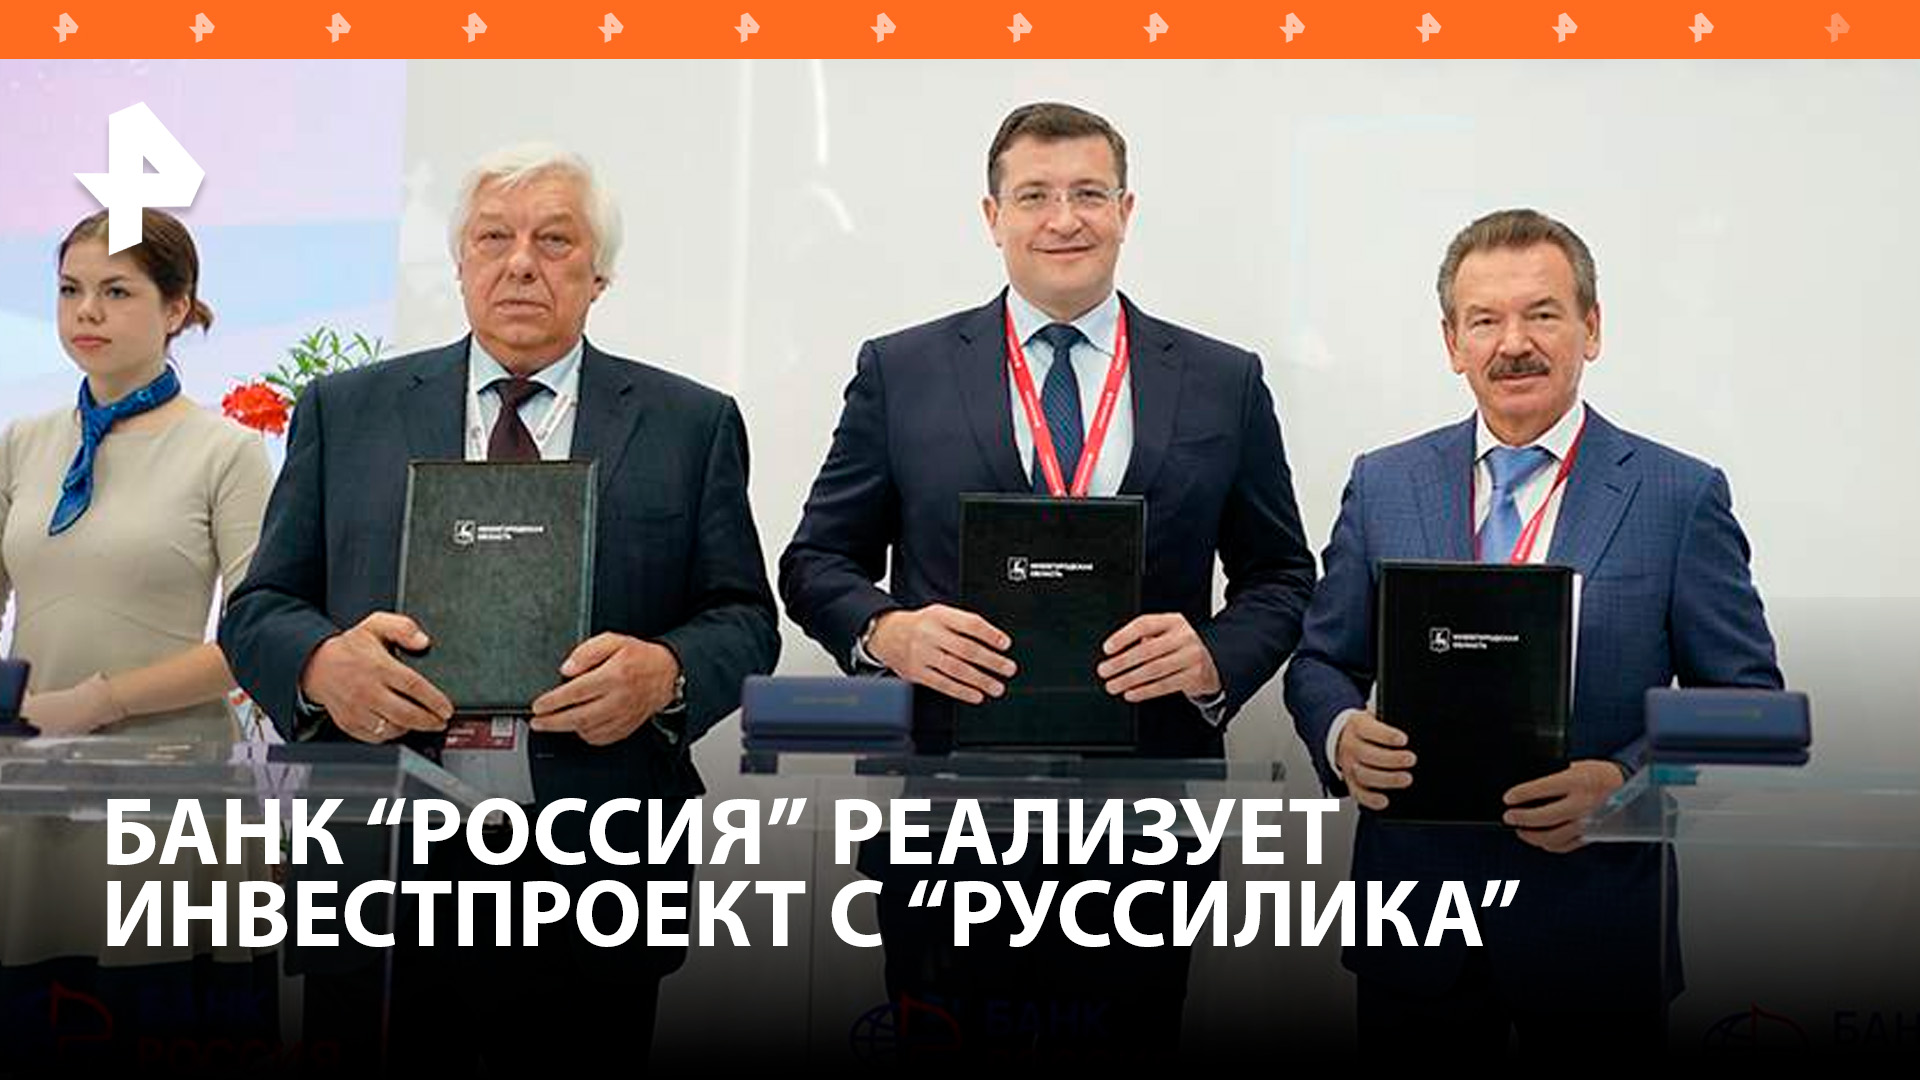 Банк "РОССИЯ" реализует инвестпроект с нижегородским правительством и компанией "РусСилика"